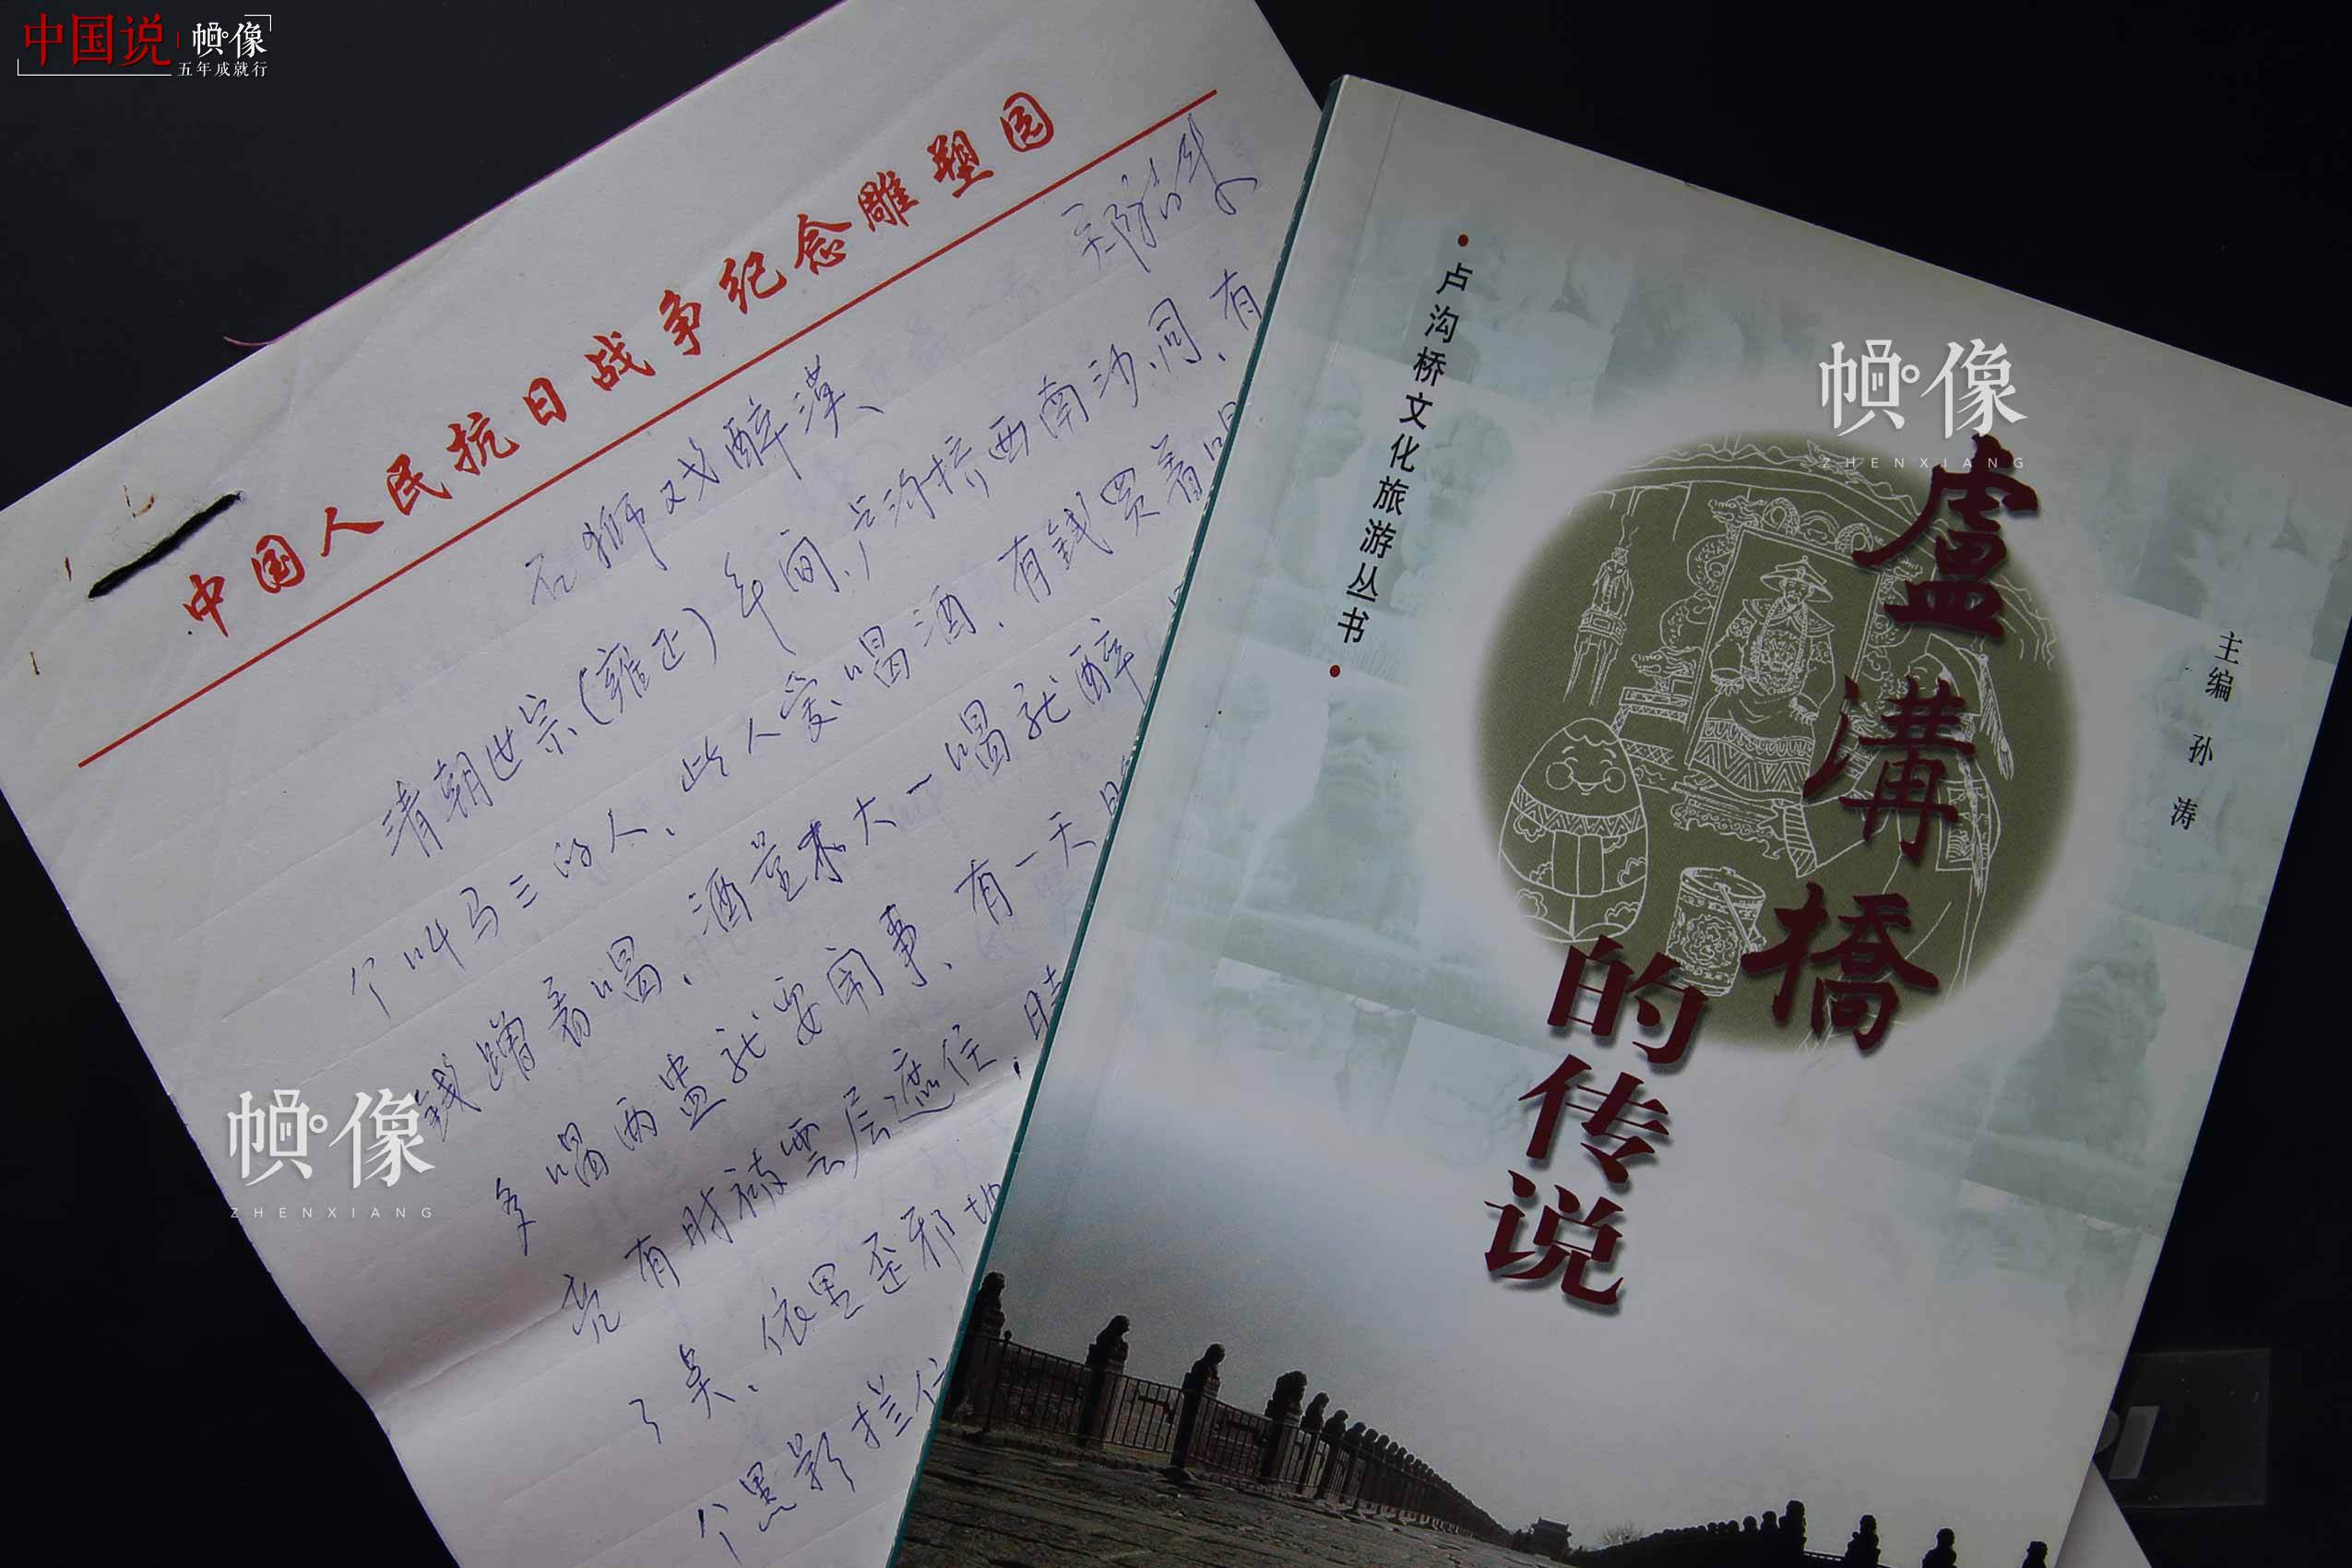 在2015年公布的75位第四批北京市级非物质文化遗产项目代表性传承人中，郑福来凭借对卢沟桥传说民间文学的贡献，位列其中。在《卢沟桥的传说》一书中，收录了郑福来的17个卢沟桥民间故事。中国网记者 陈维松 摄 